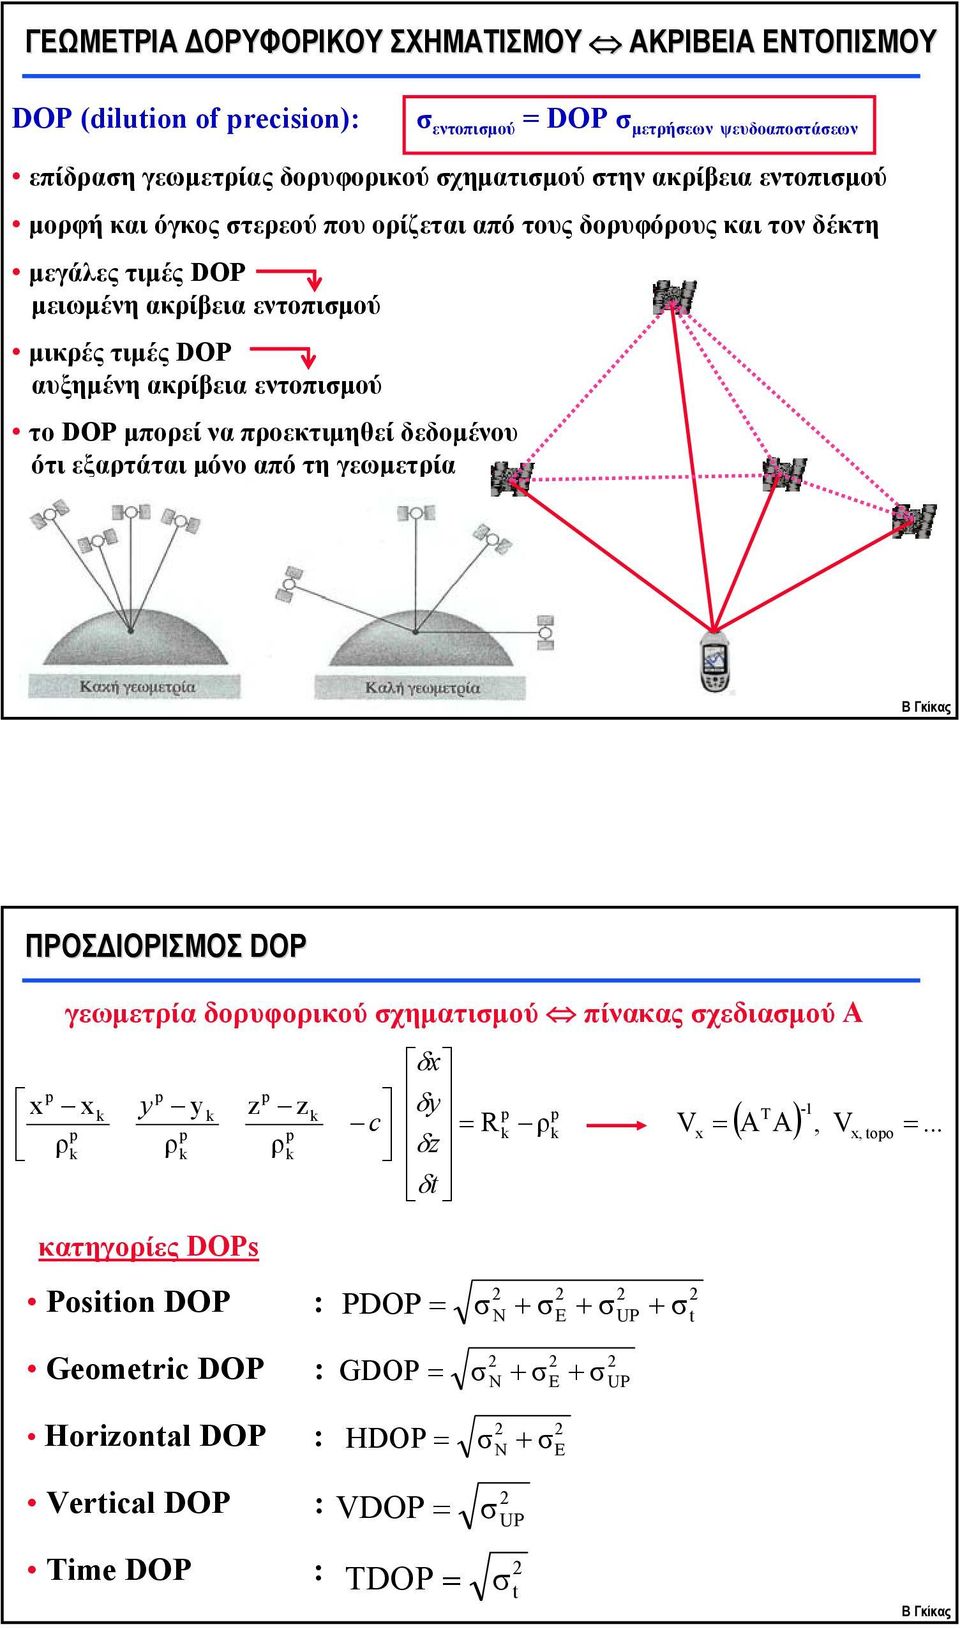 εντοπιμού το DOP μπορεί να προεκτιμηθεί δεδομένου ότι εξαρτάται μόνο από τη γεωμετρία ΠΡΟΣΔΙΟΡΙΣΜΟΣ DOP γεωμετρία δορυφορικού χηματιμού πίνακας χεδιαμού Α x x x k y yk z